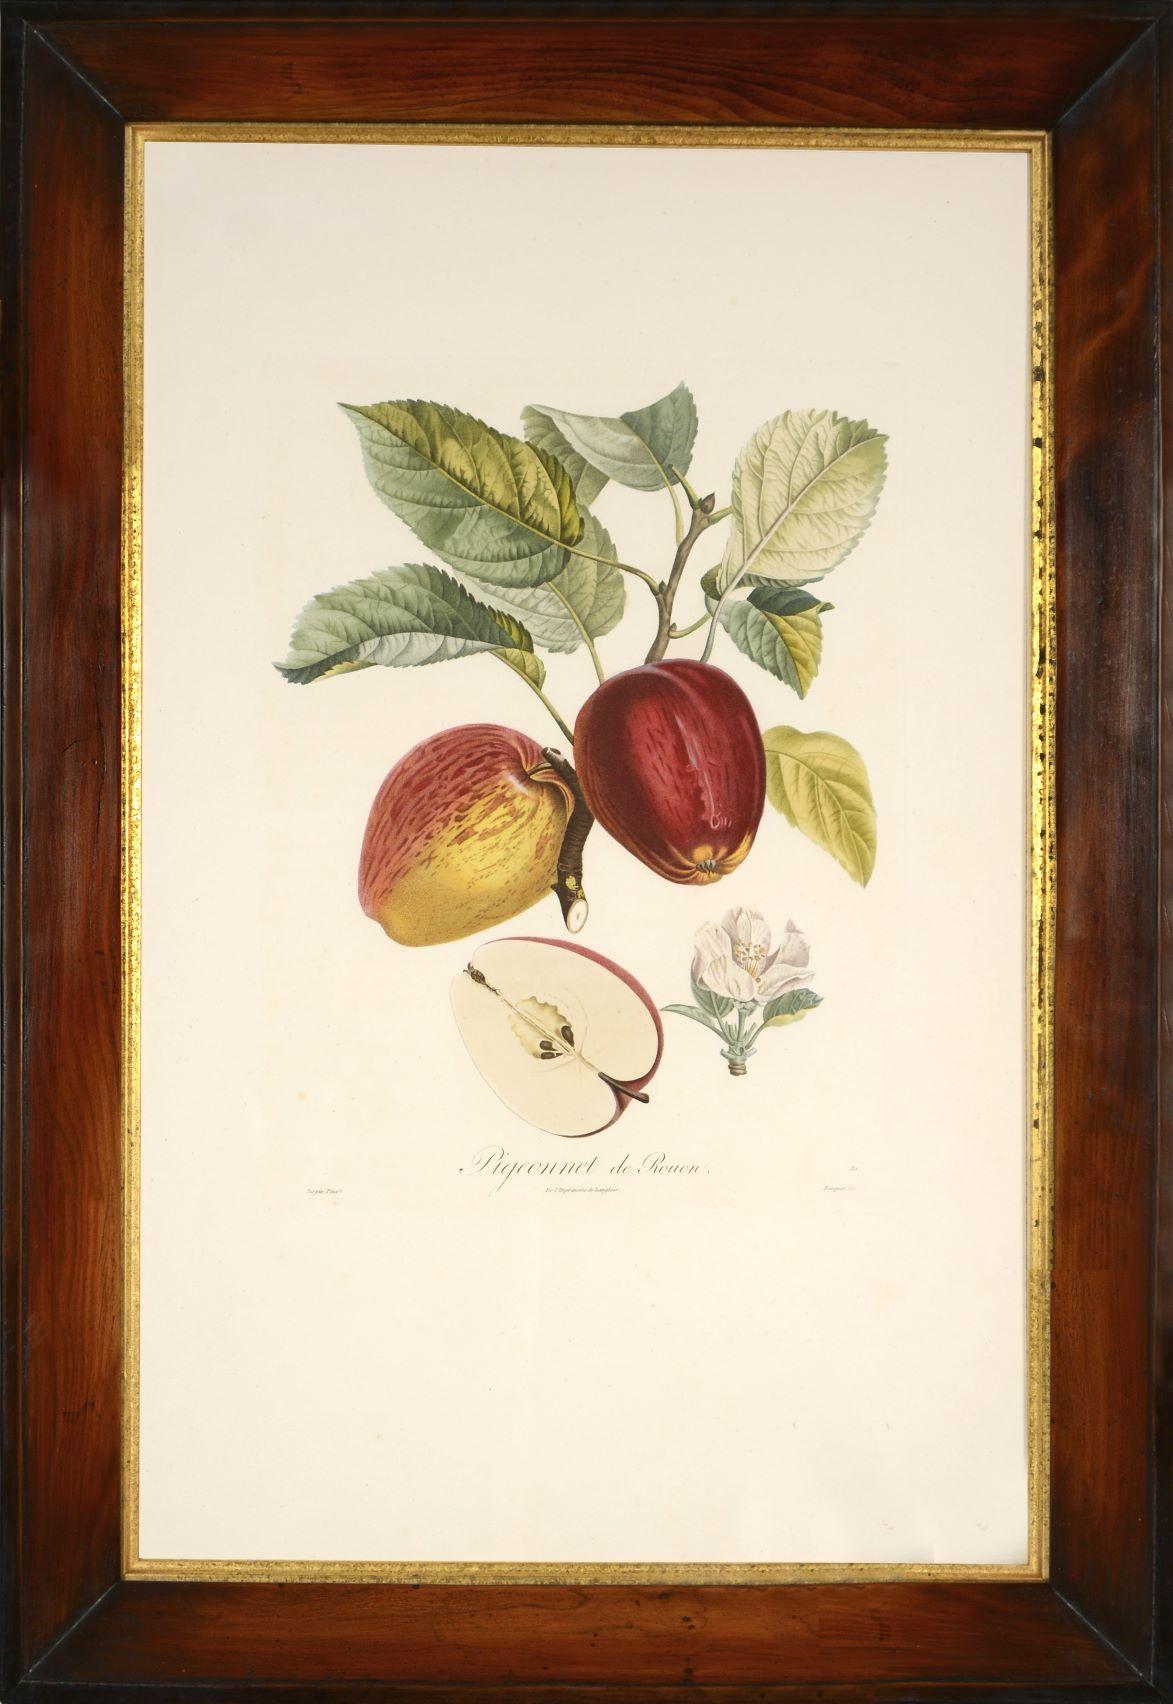 POITEAU/TURPIN. Traité des arbres fruitiers: A Set of Four Apples - Print by POITEAU, A. and P. TURPIN.   